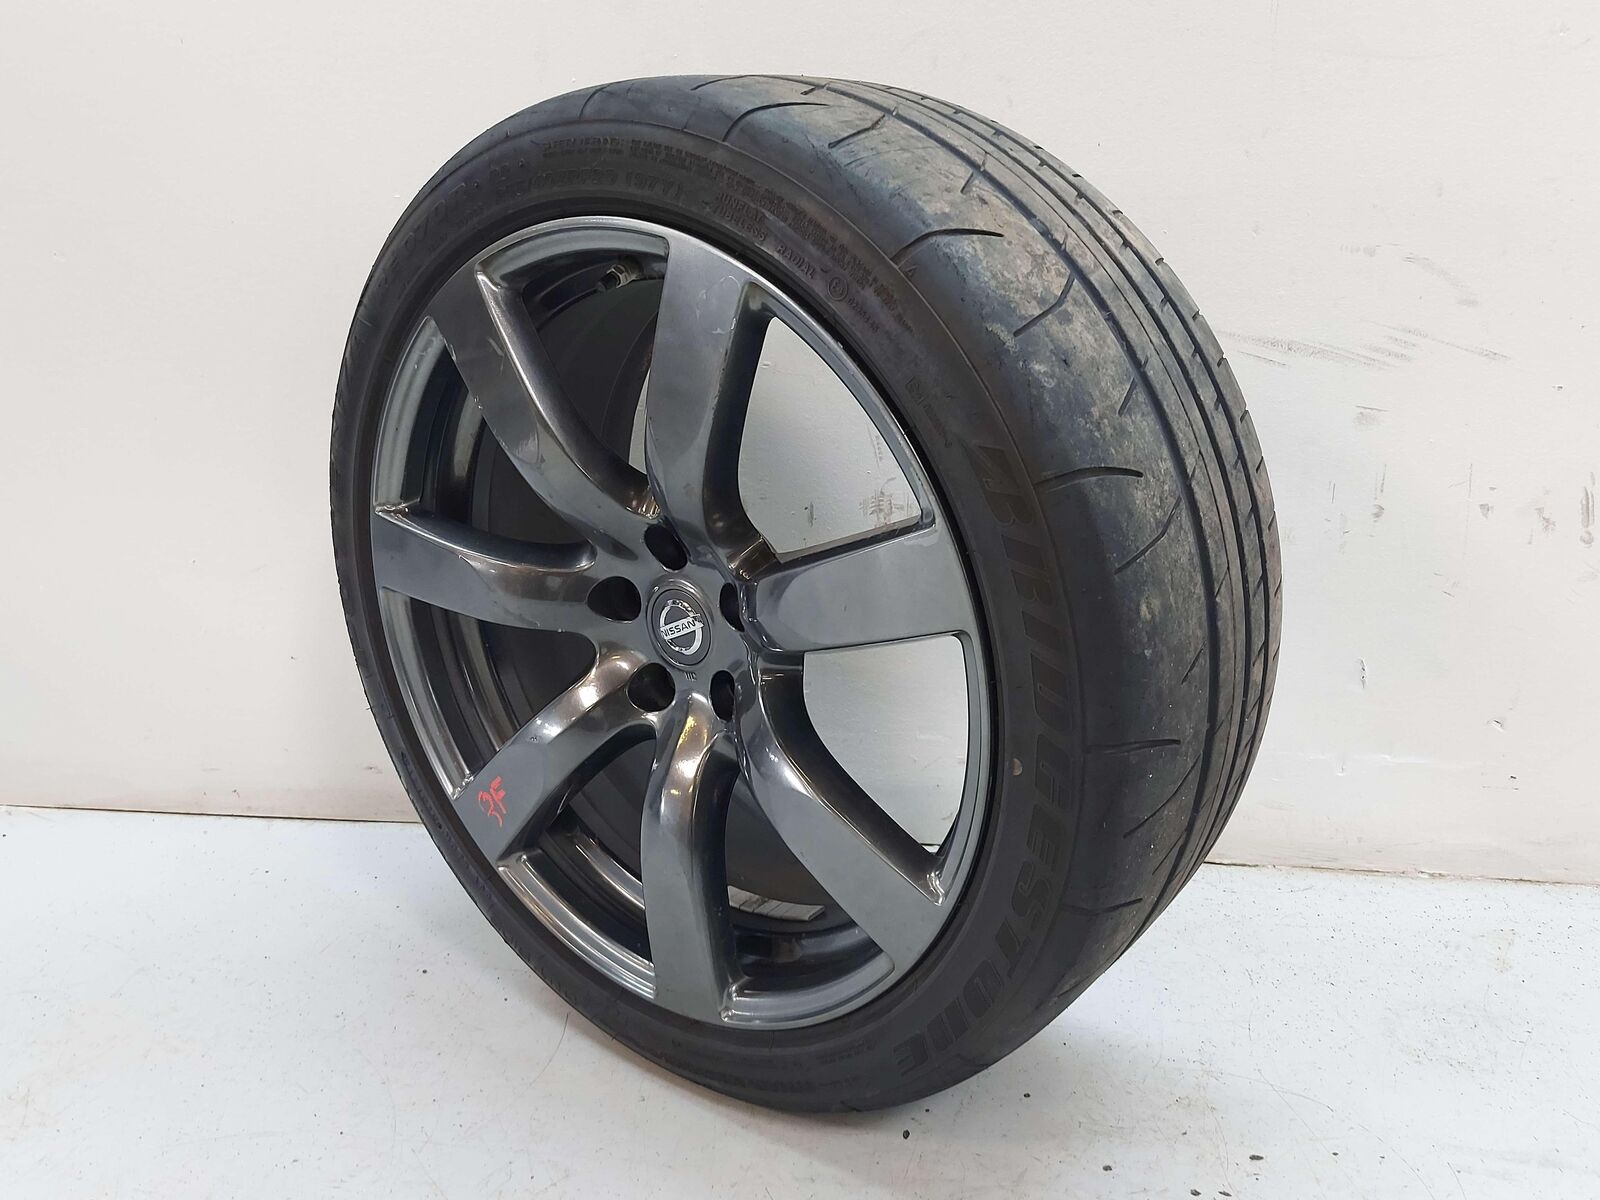 09-11 Nissan GT-R R35 Alloy Wheel Set of 4 20"x9.5"/10.5" w/ Runflat